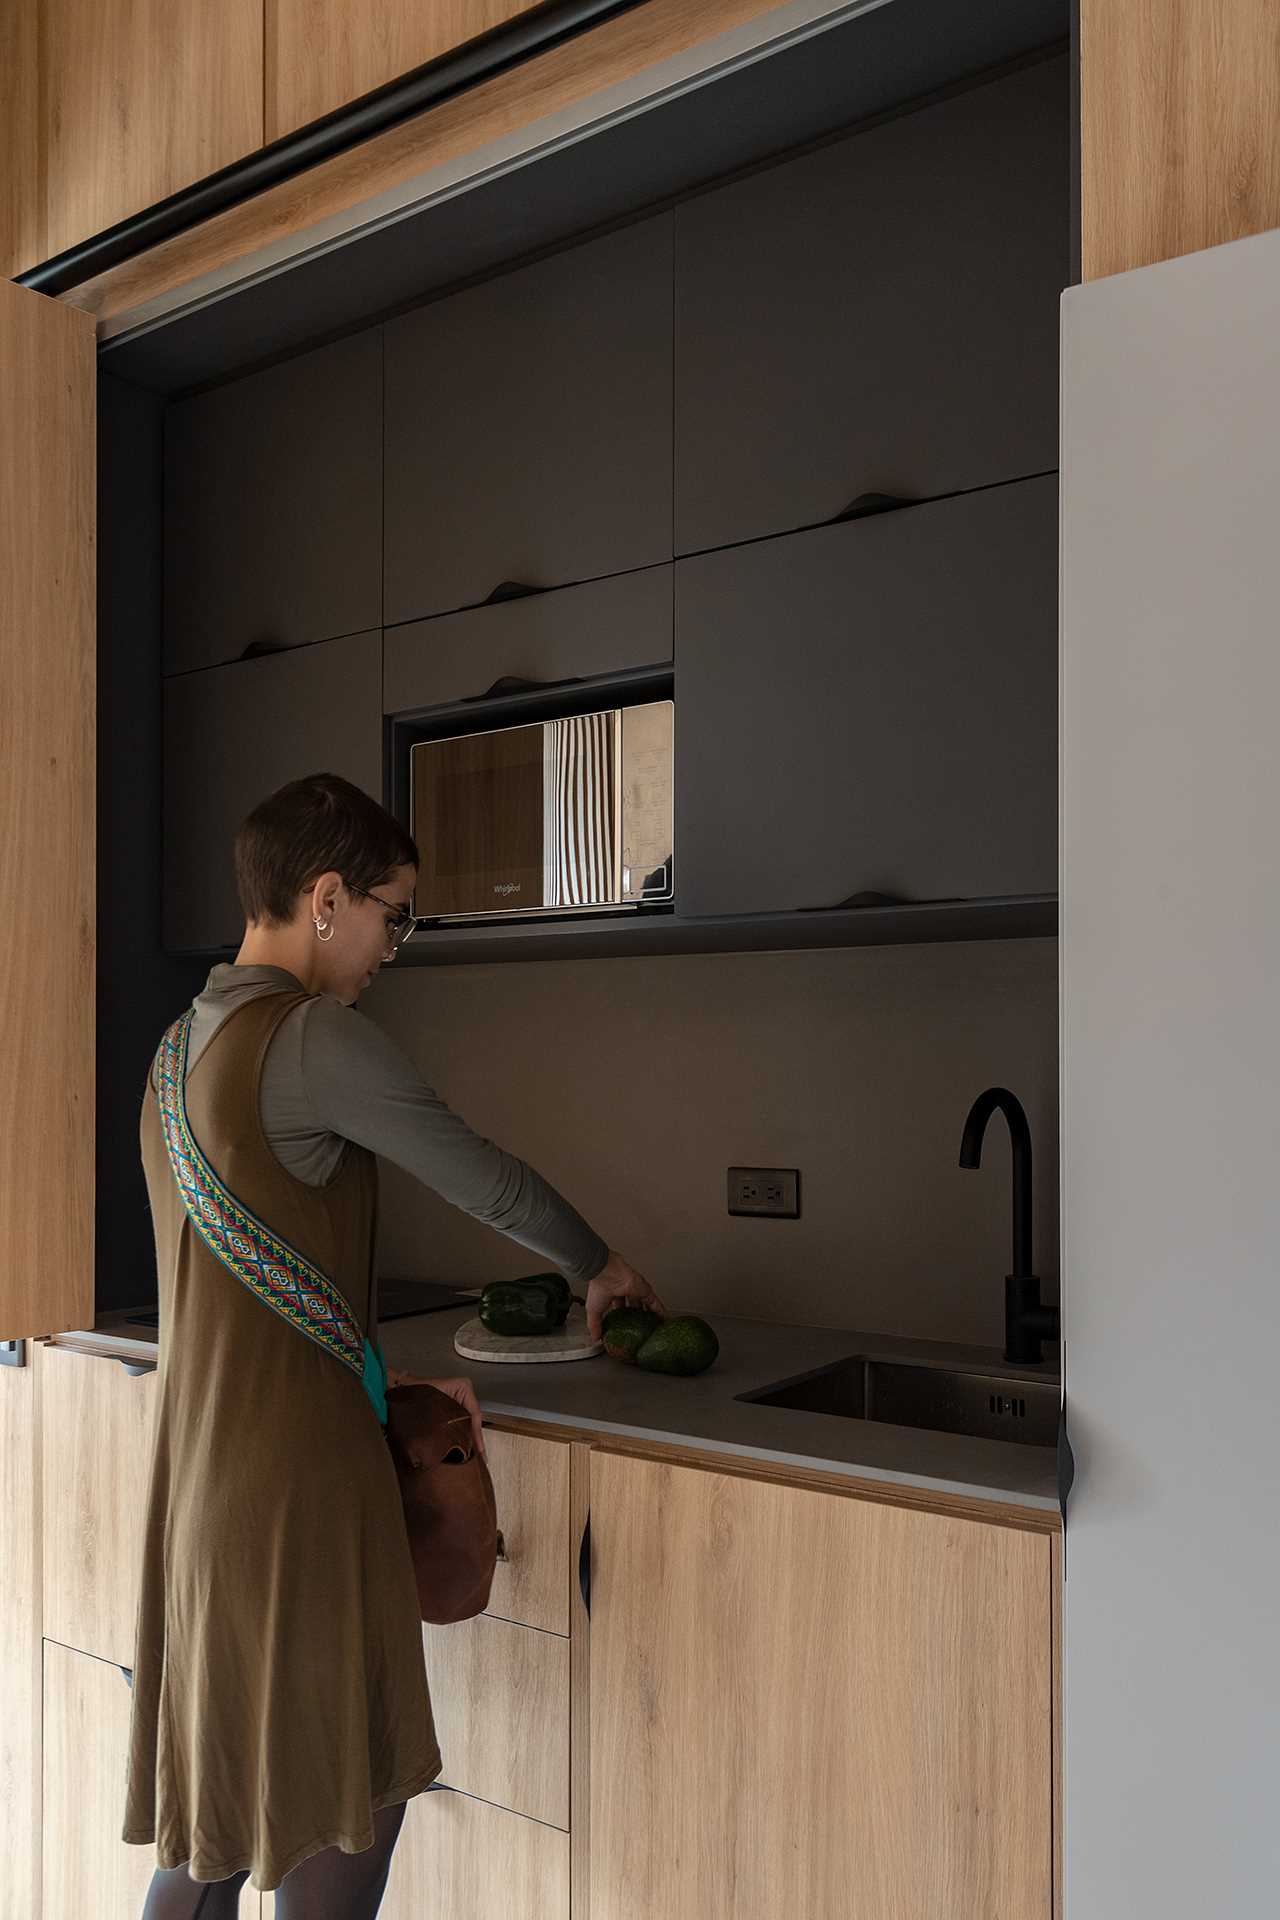 Thiết kế tủ đồ giúp tận dụng tối đa không gian trong căn hộ nhỏ - Ảnh 13.